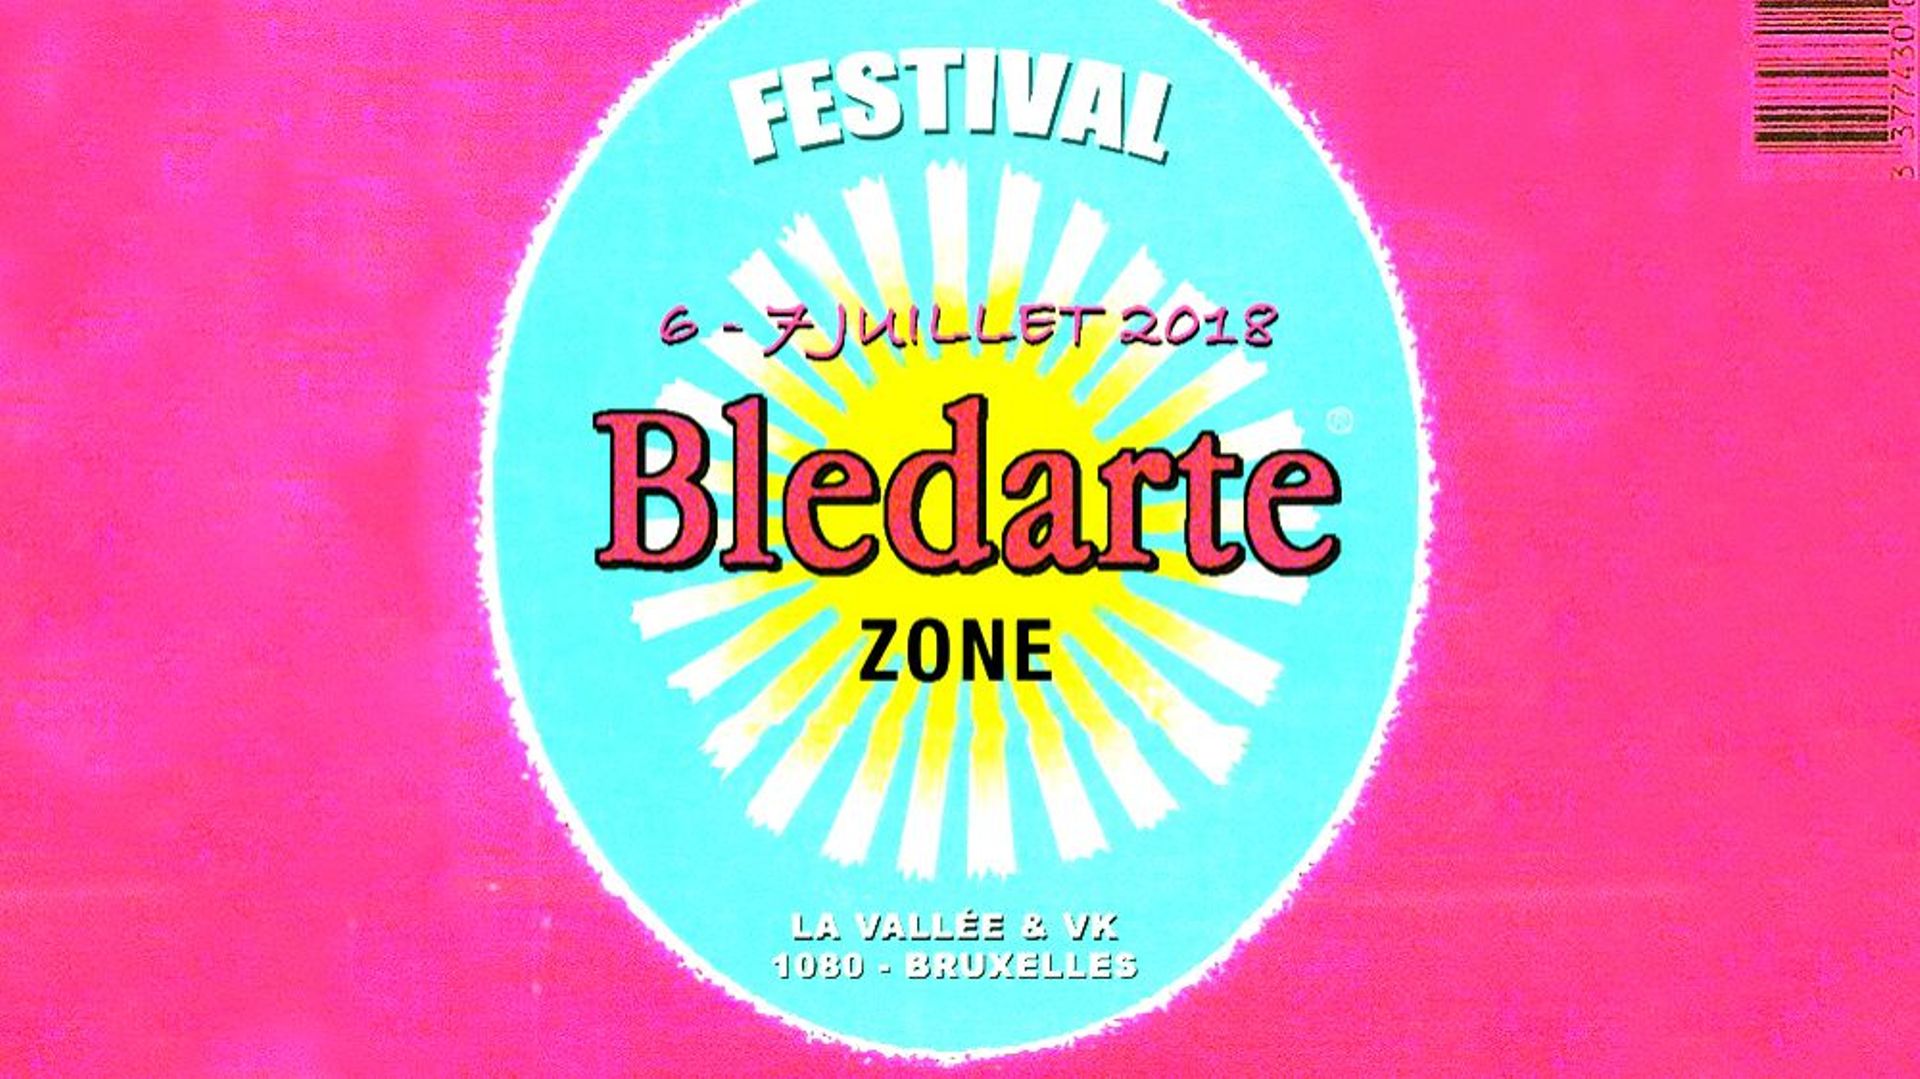 Bledarte Zone Festival : bienvenue en zone décolonisée